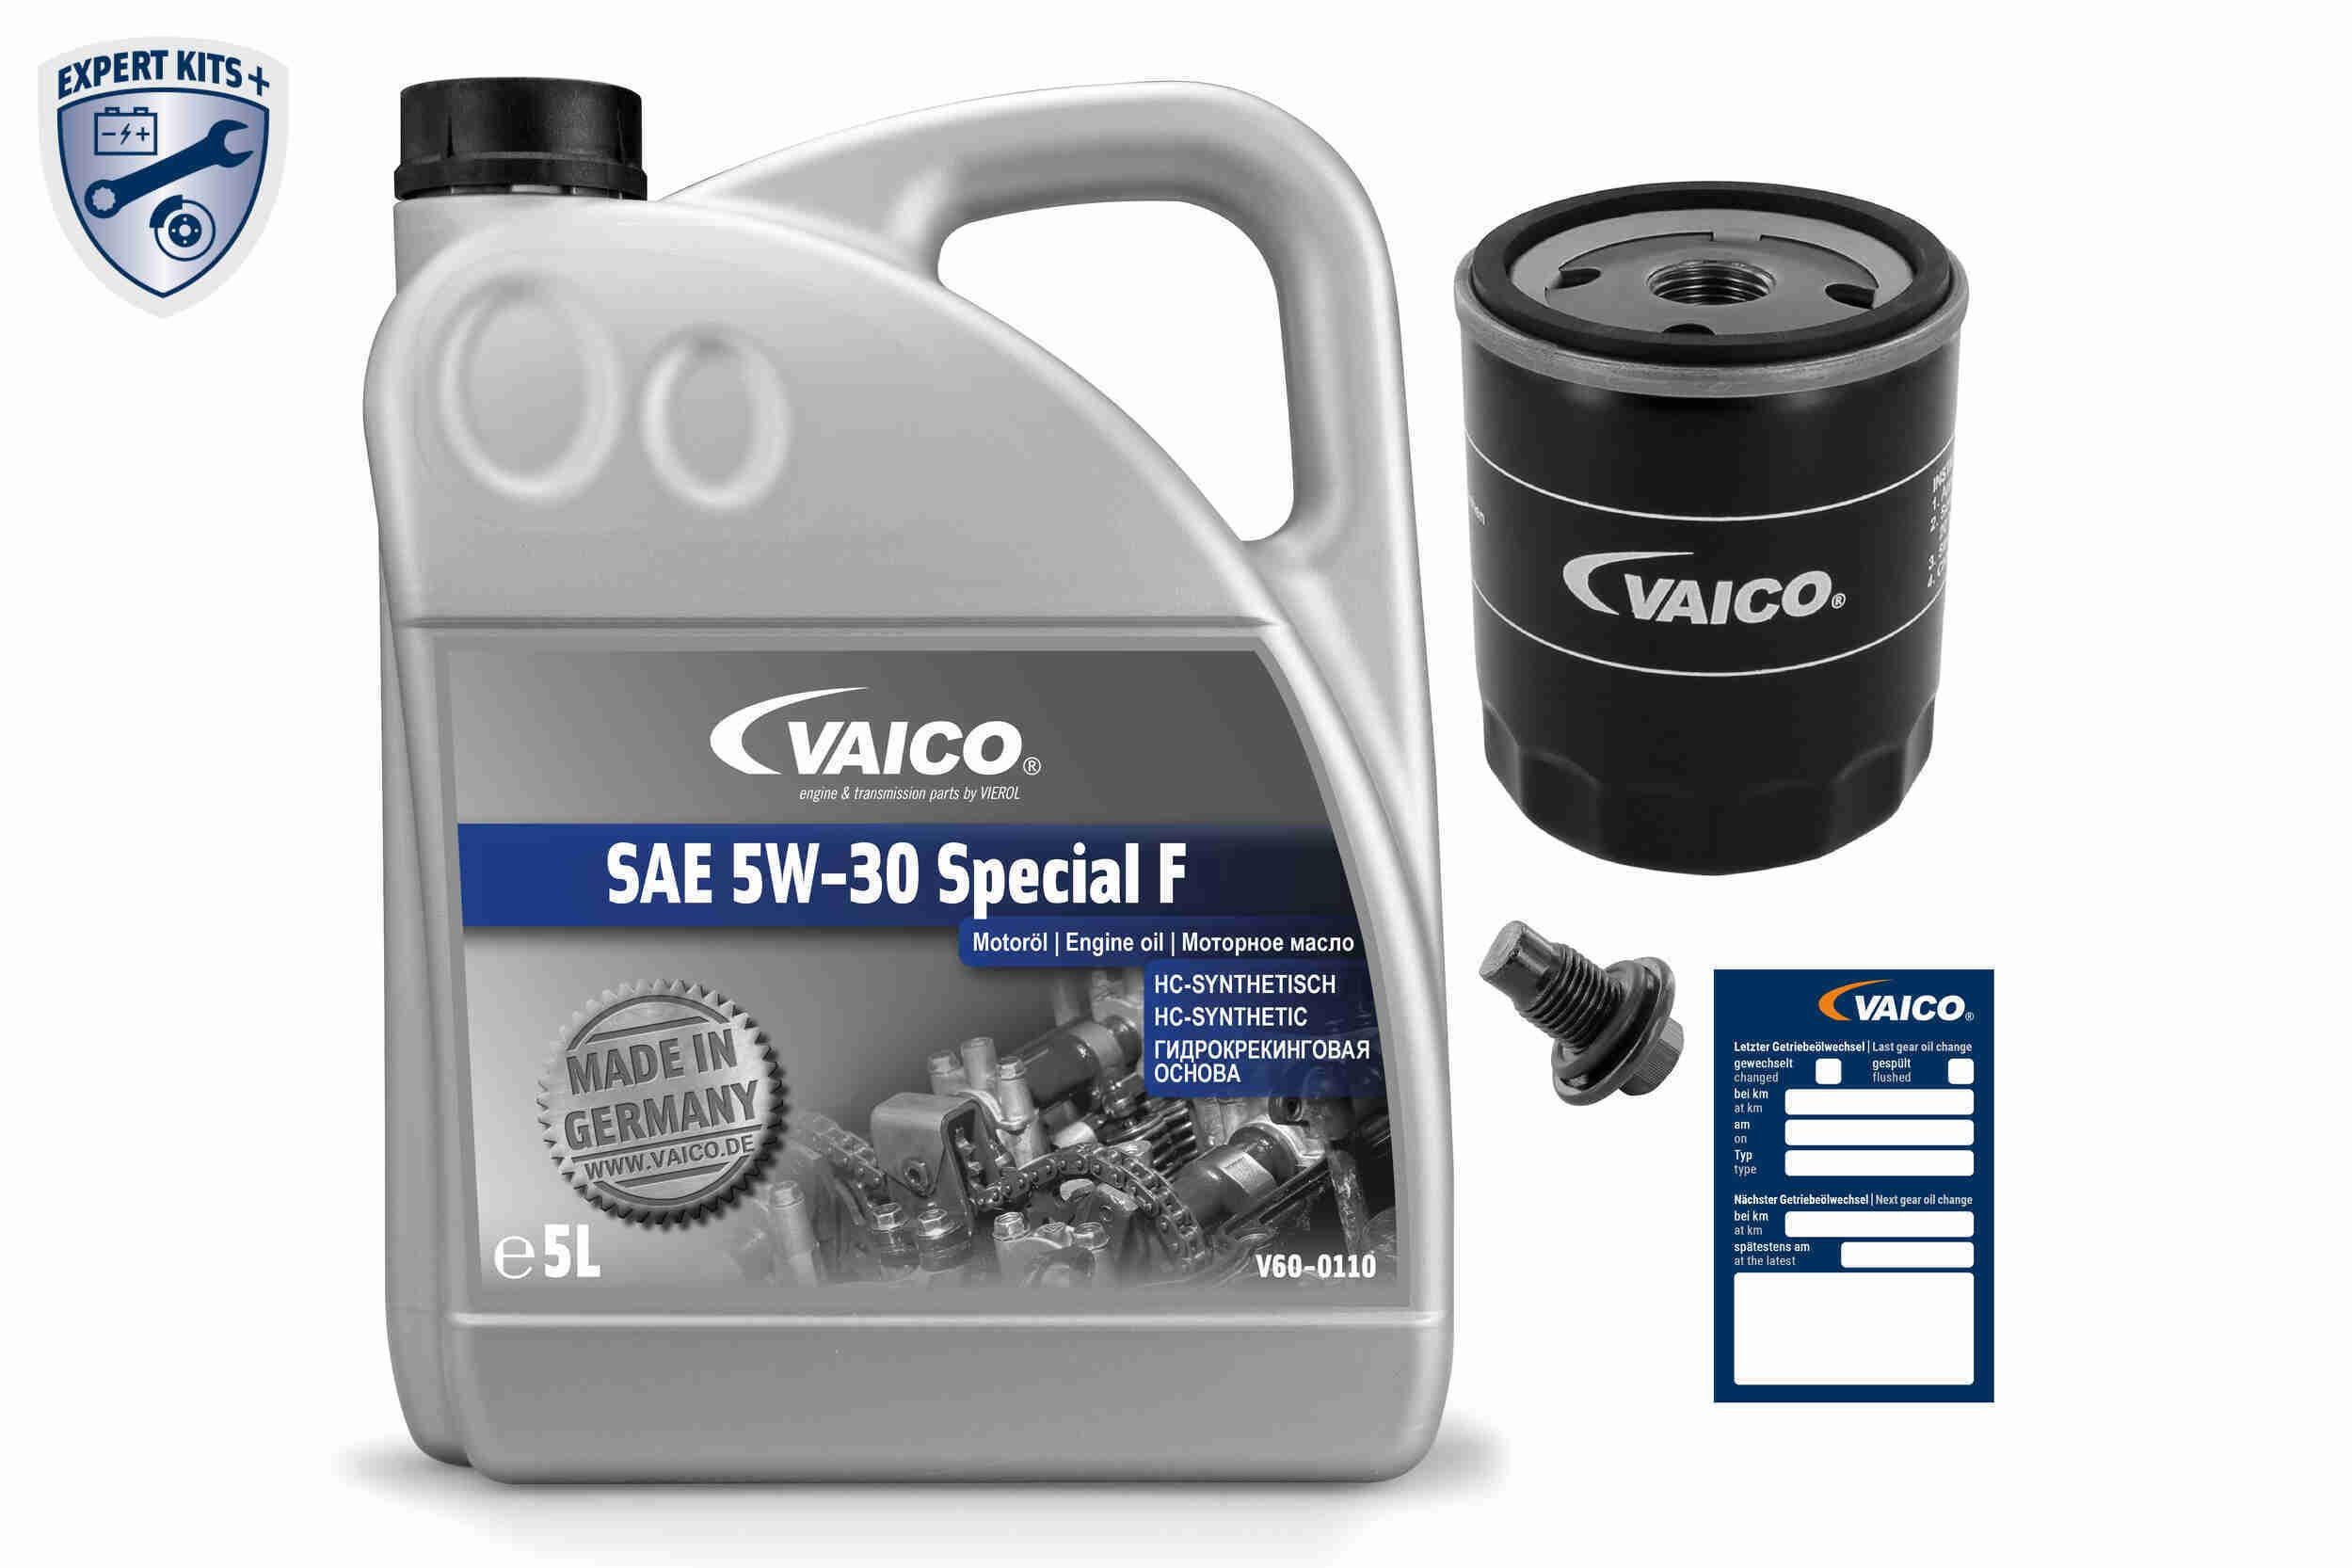 VAICO V60-3003 Filter service kit price